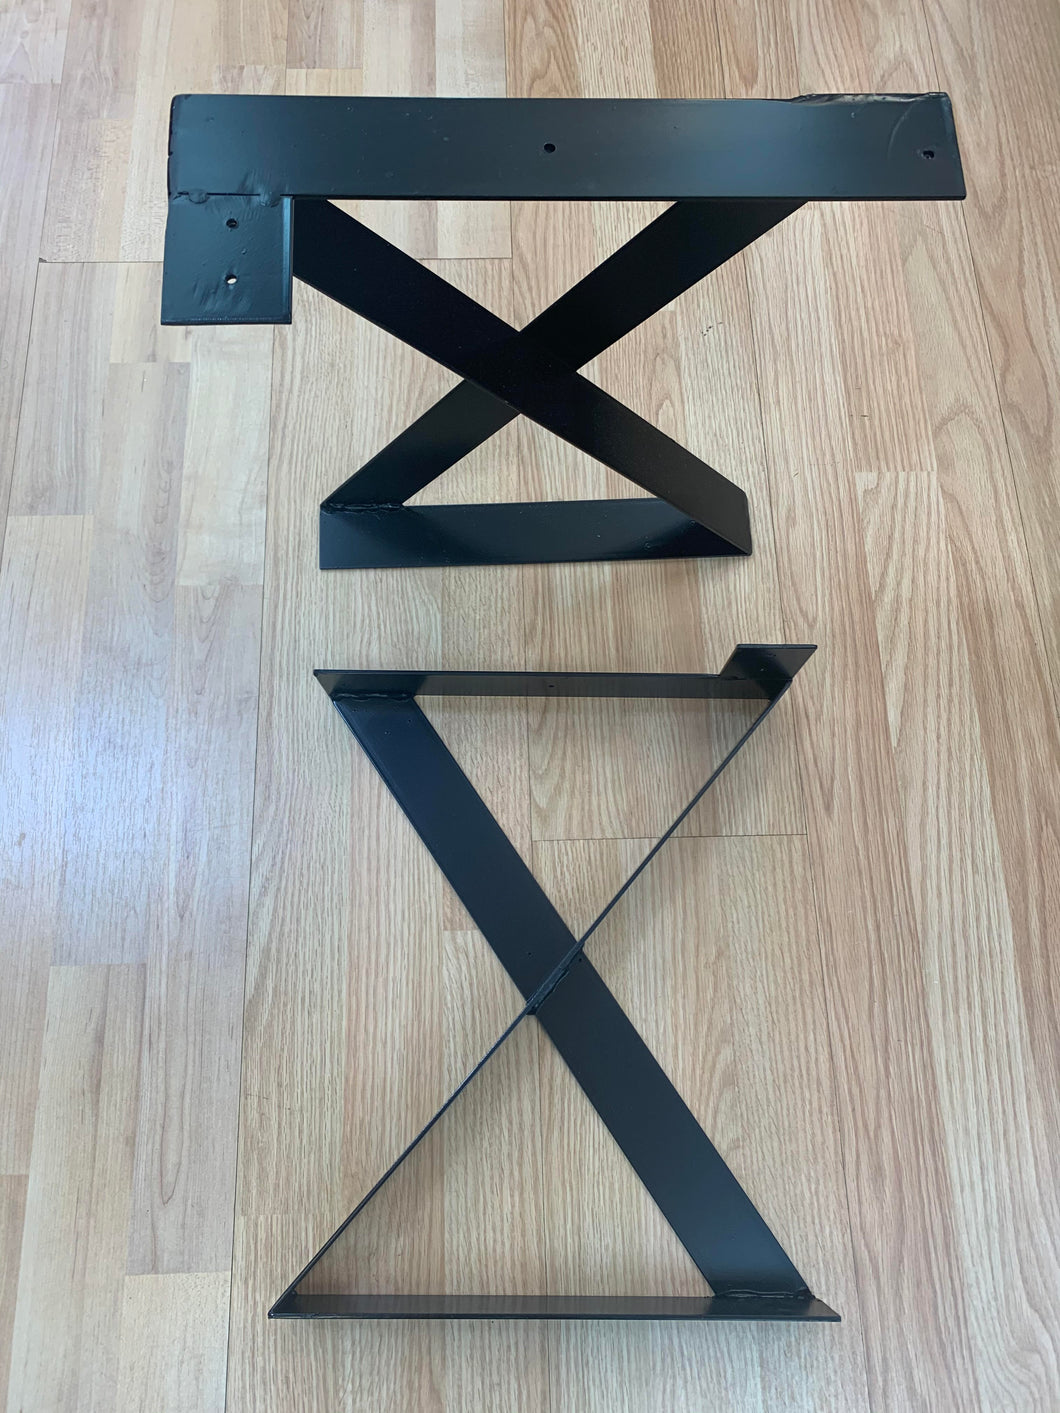 TABLE LEGS - X SHAPE